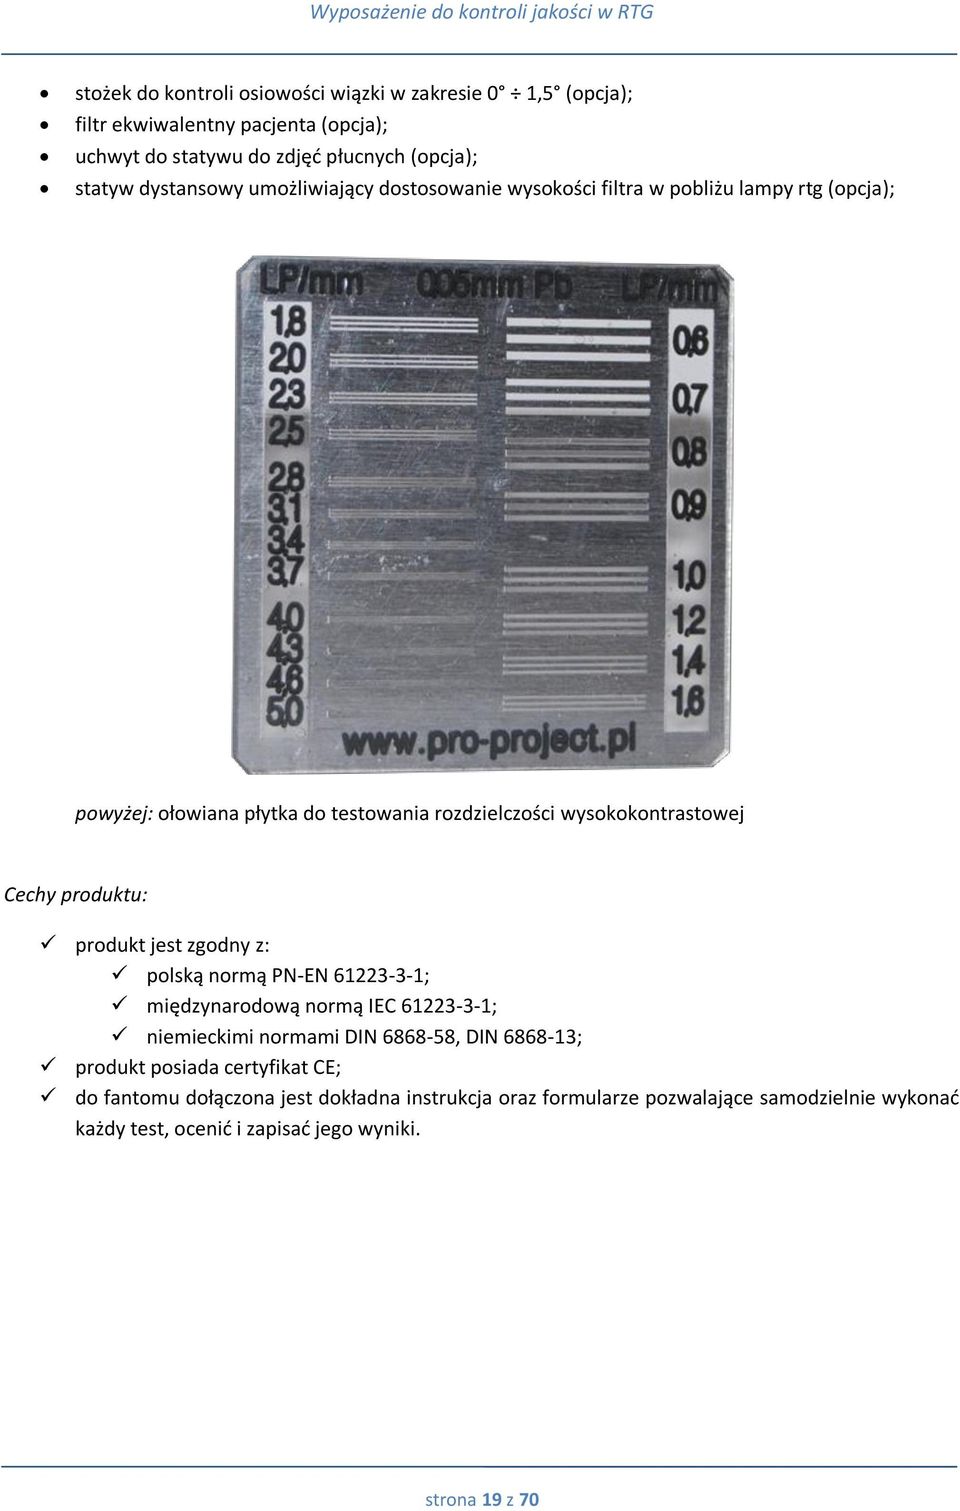 Cechy produktu: produkt jest zgodny z: polską normą PN-EN 61223-3-1; międzynarodową normą IEC 61223-3-1; niemieckimi normami DIN 6868-58, DIN 6868-13; produkt